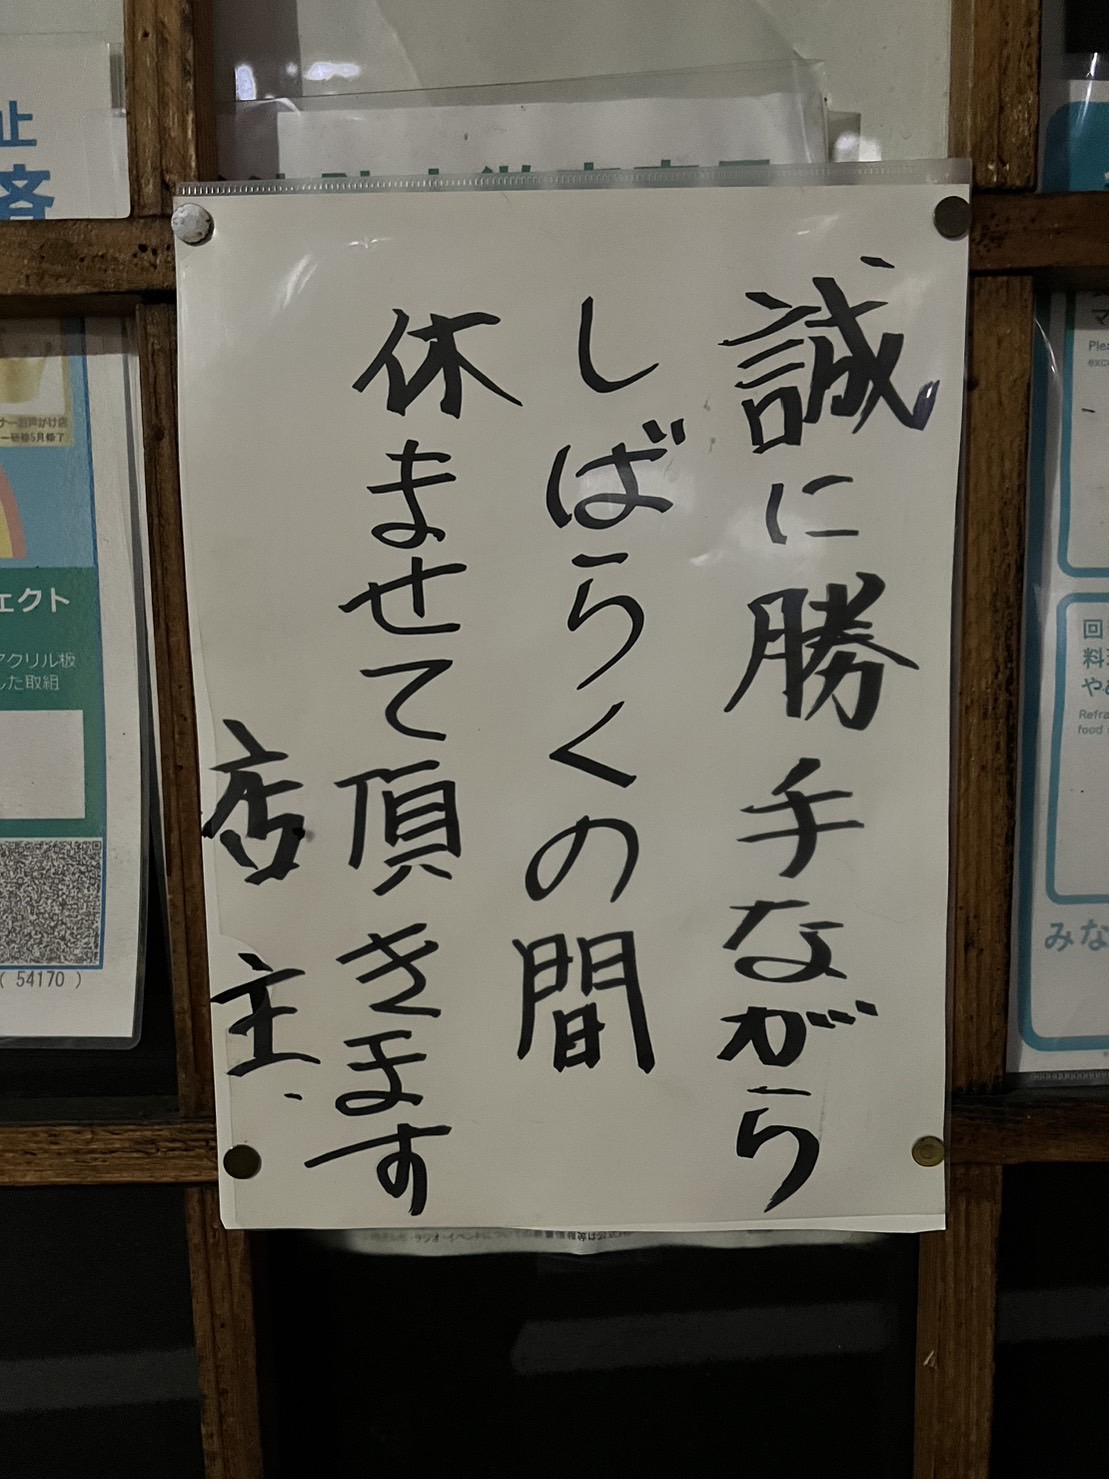 仲本工事さんが営む「仲本家JUNKAの台所」の入り口には休業の知らせが貼られていた